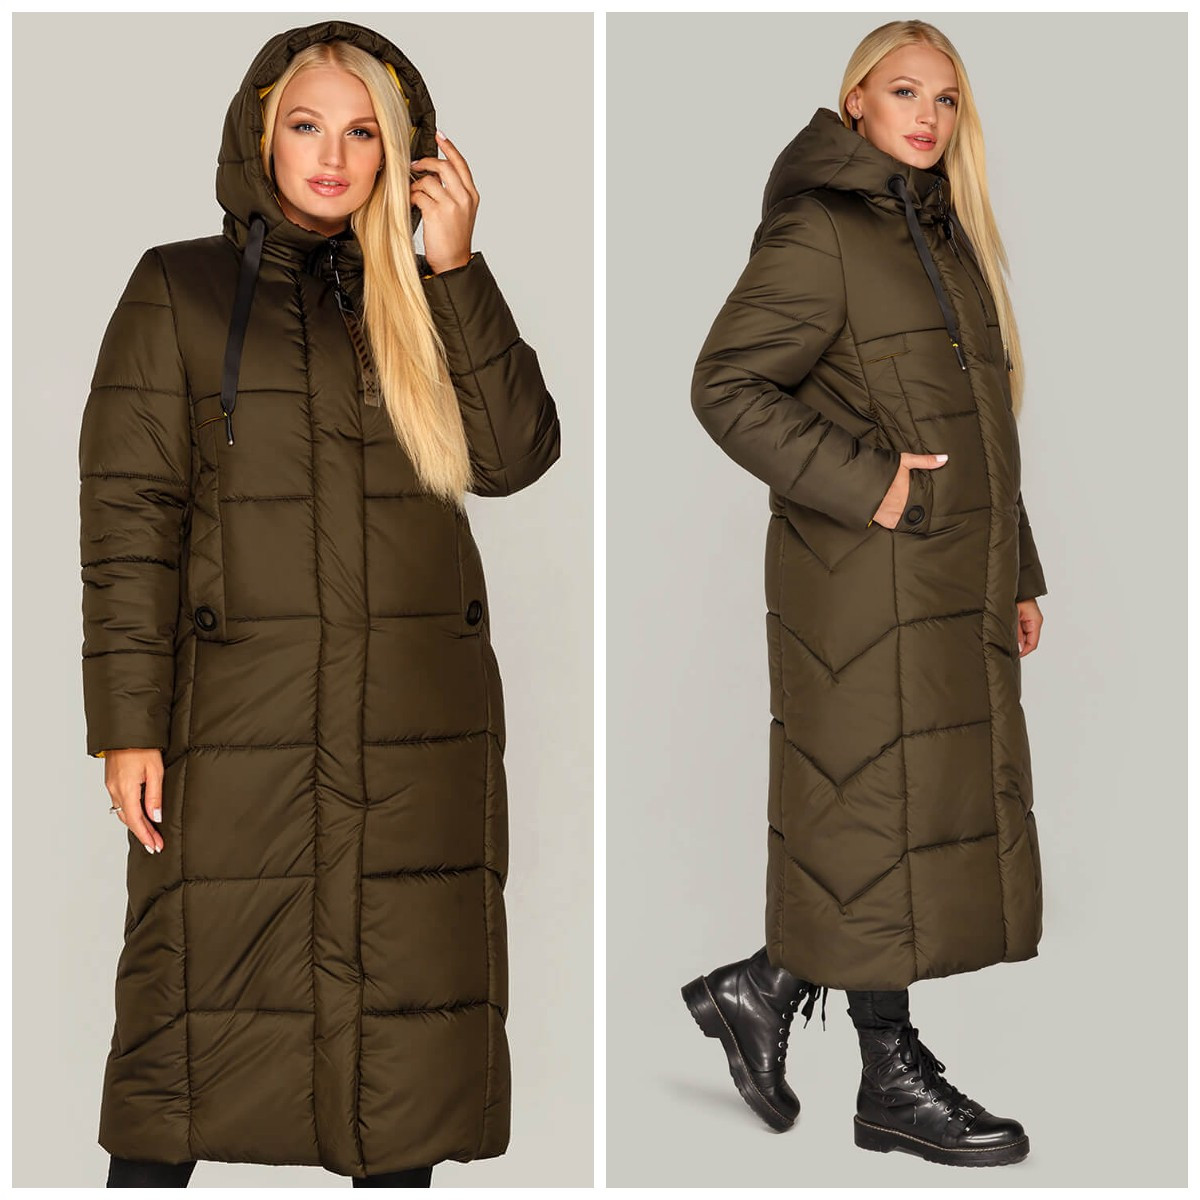 Зимове жіноче пальто - куртка Сандра кольору хакі, розміри 44-62